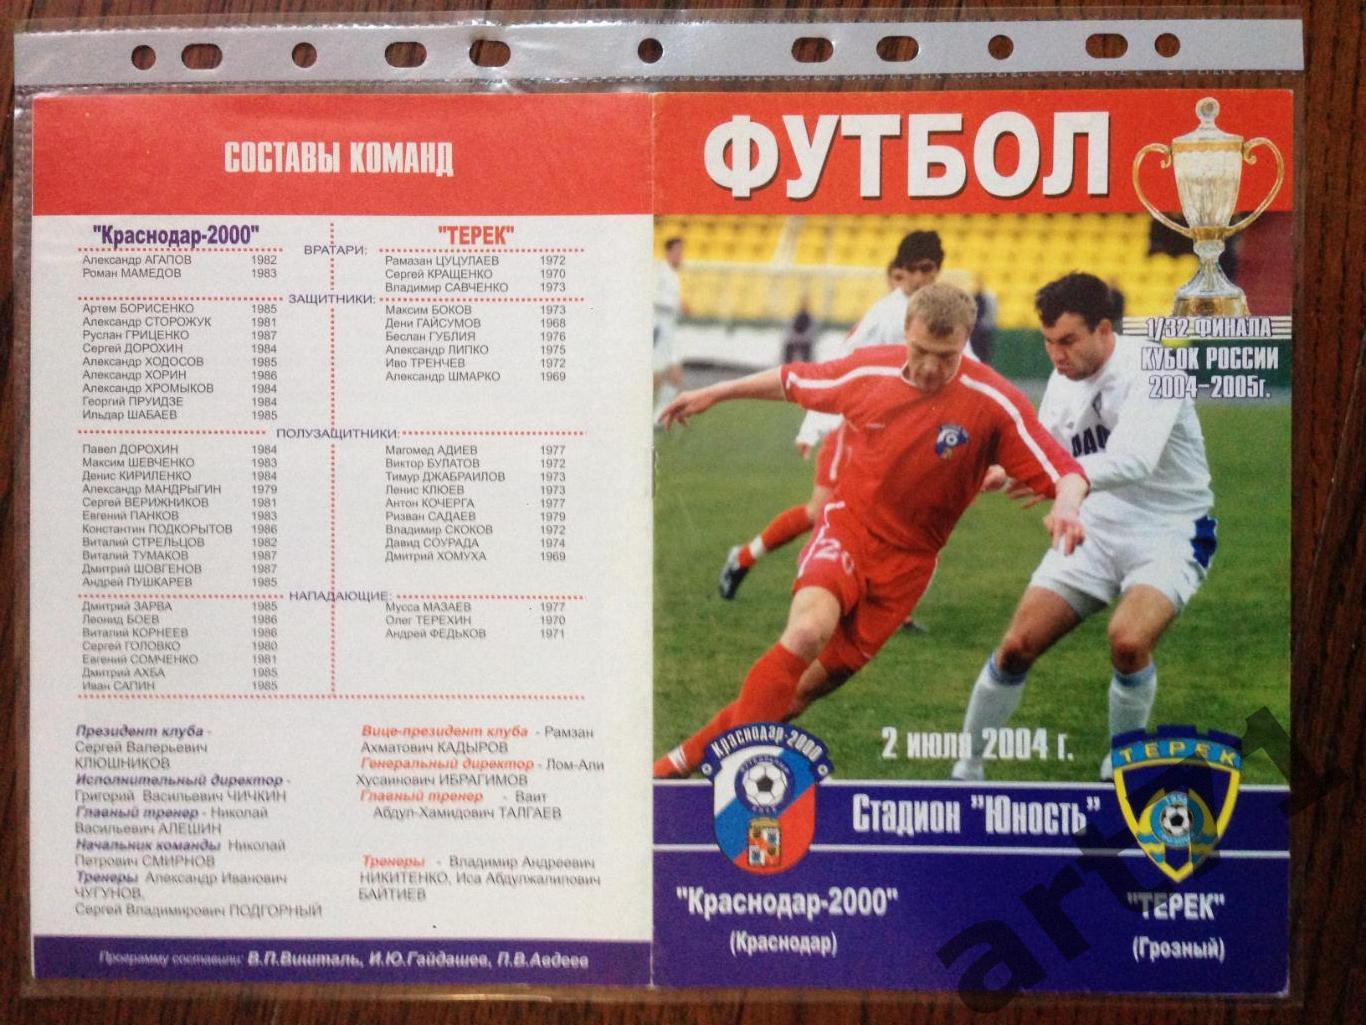 + Краснодар-2000 - Терек Грозный 2004